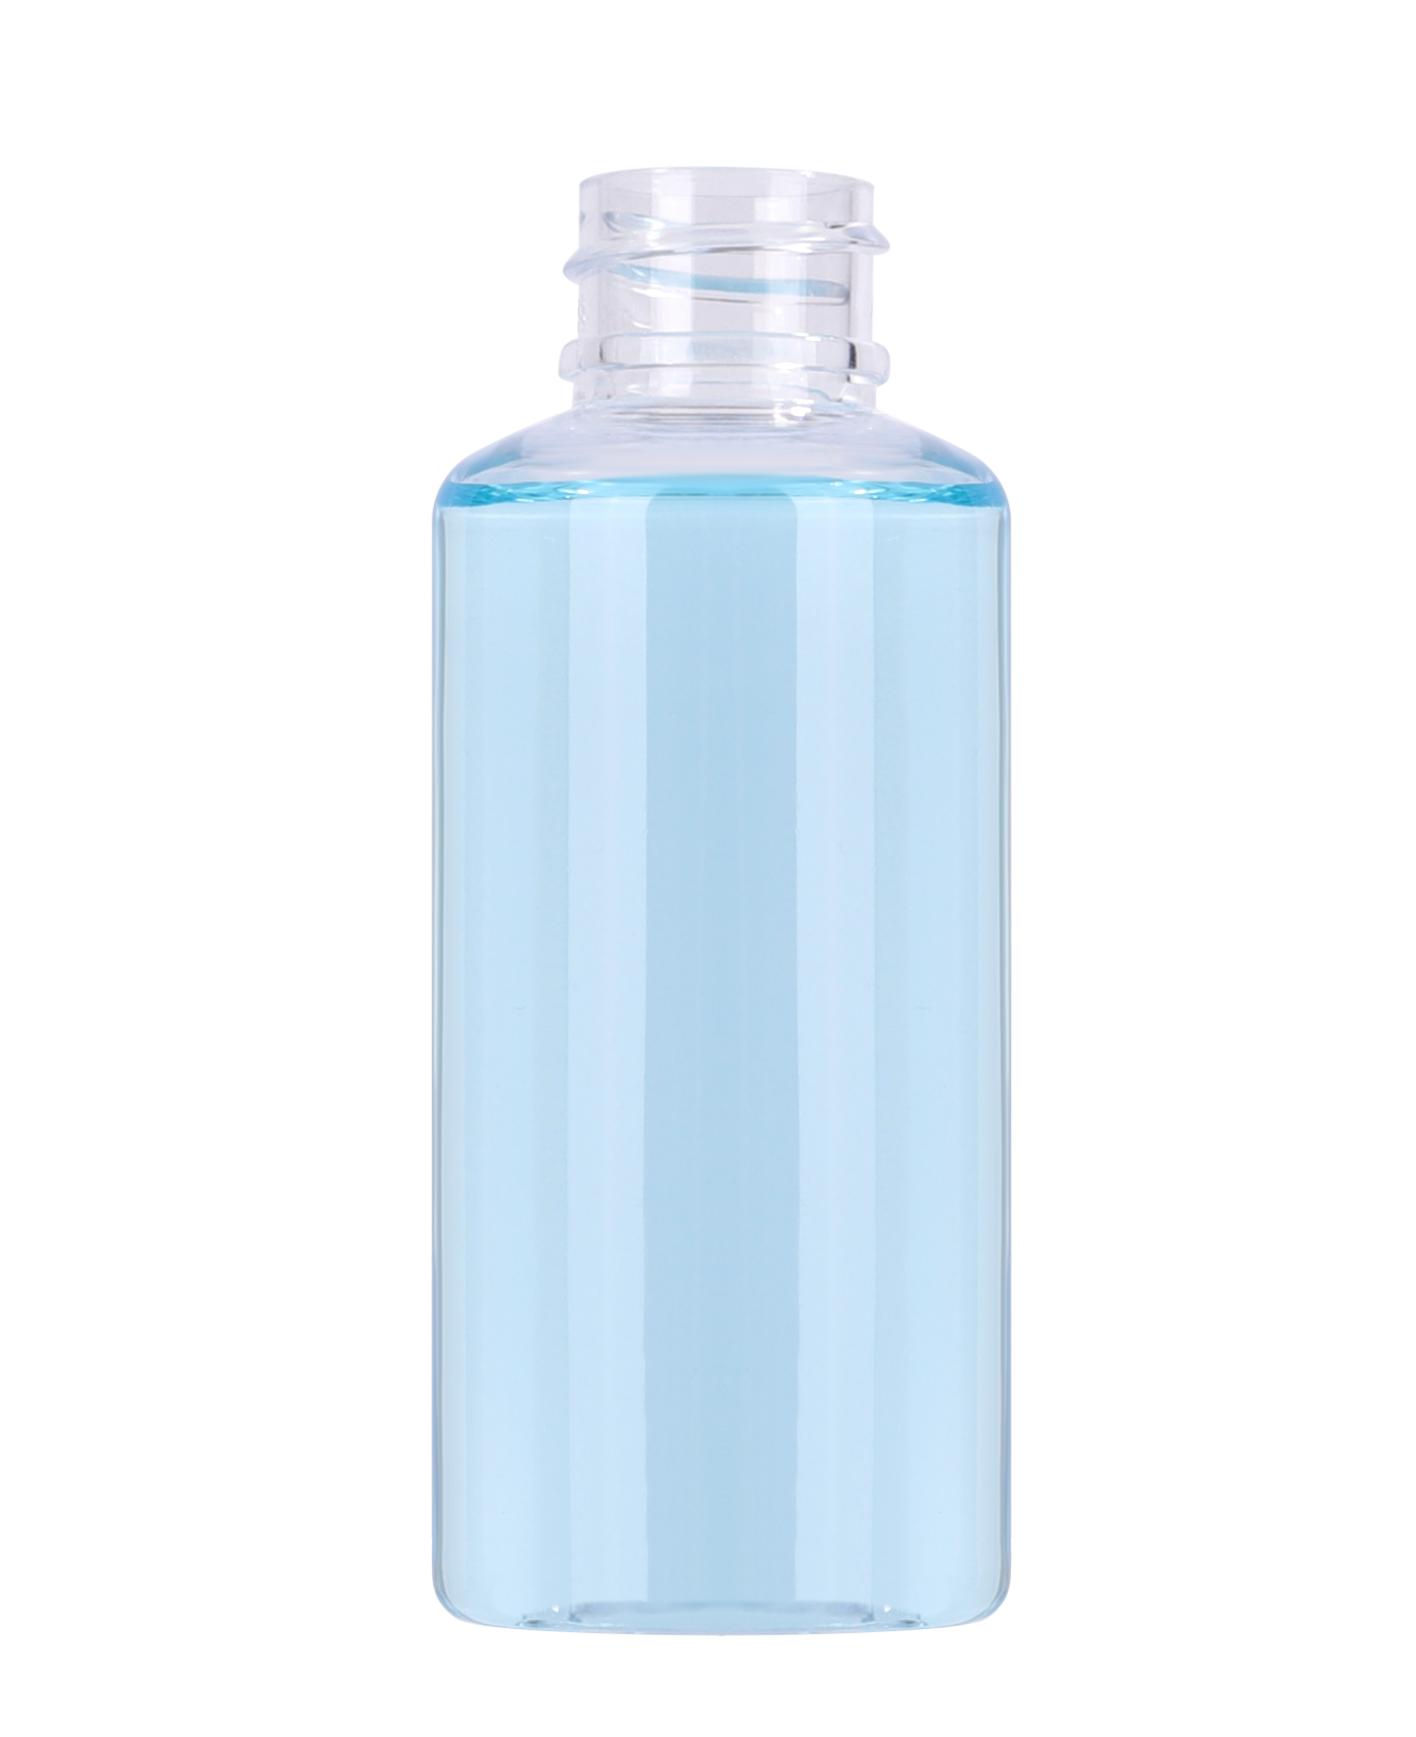 70 ml empty clear PET plastic hand sanitizer bottle with flip top cap